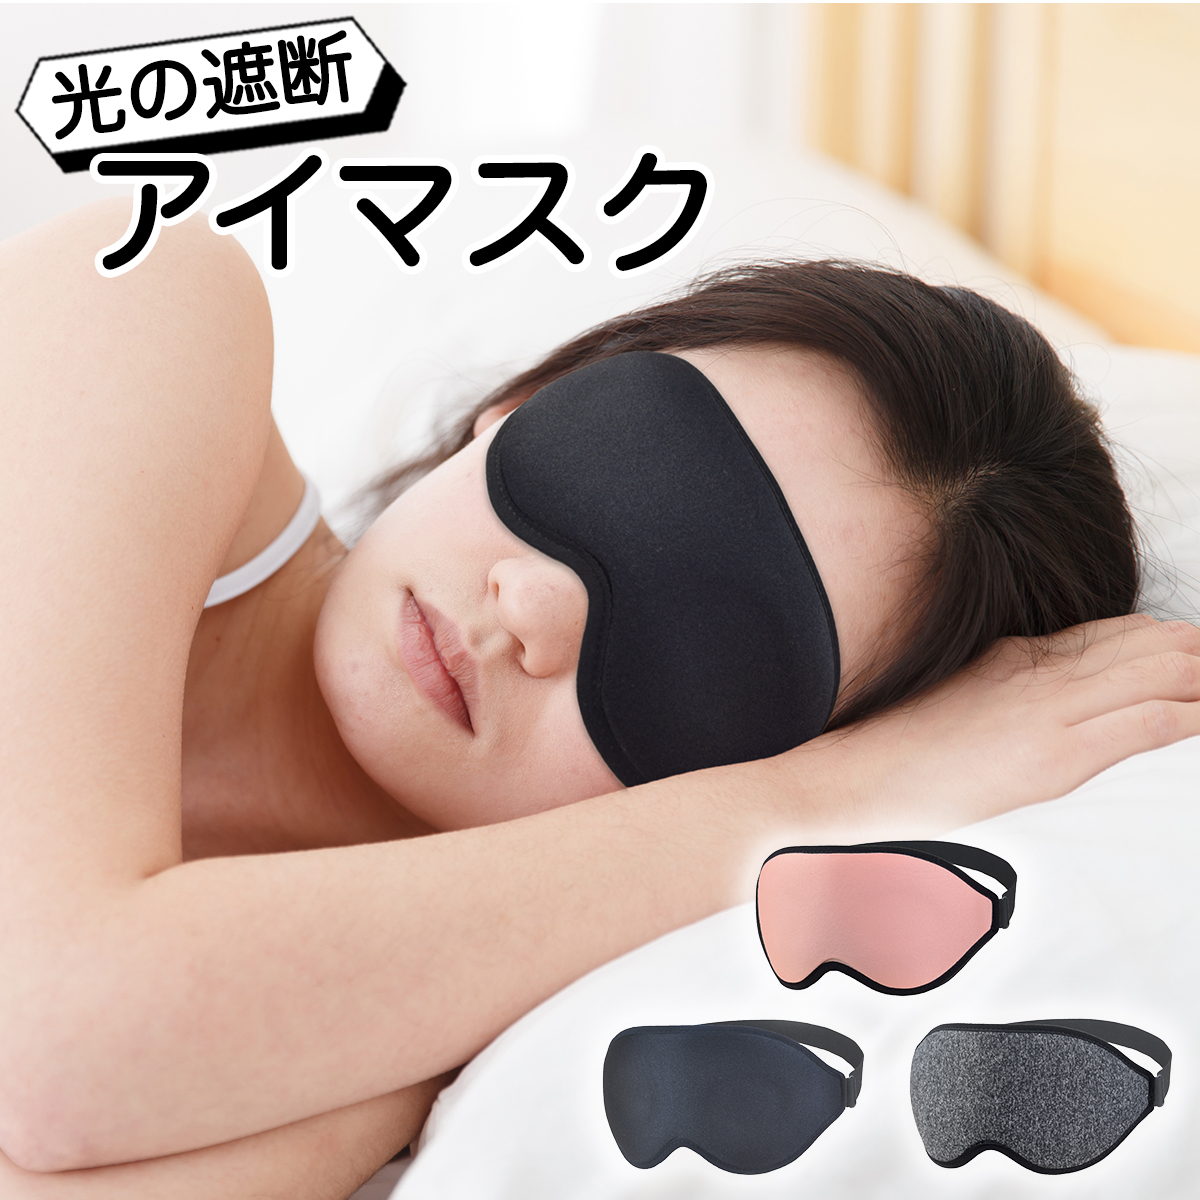 アイマスク 黒 ブラック 3D 立体 遮光 目隠し 安眠 快眠 飛行機 携帯用 通販